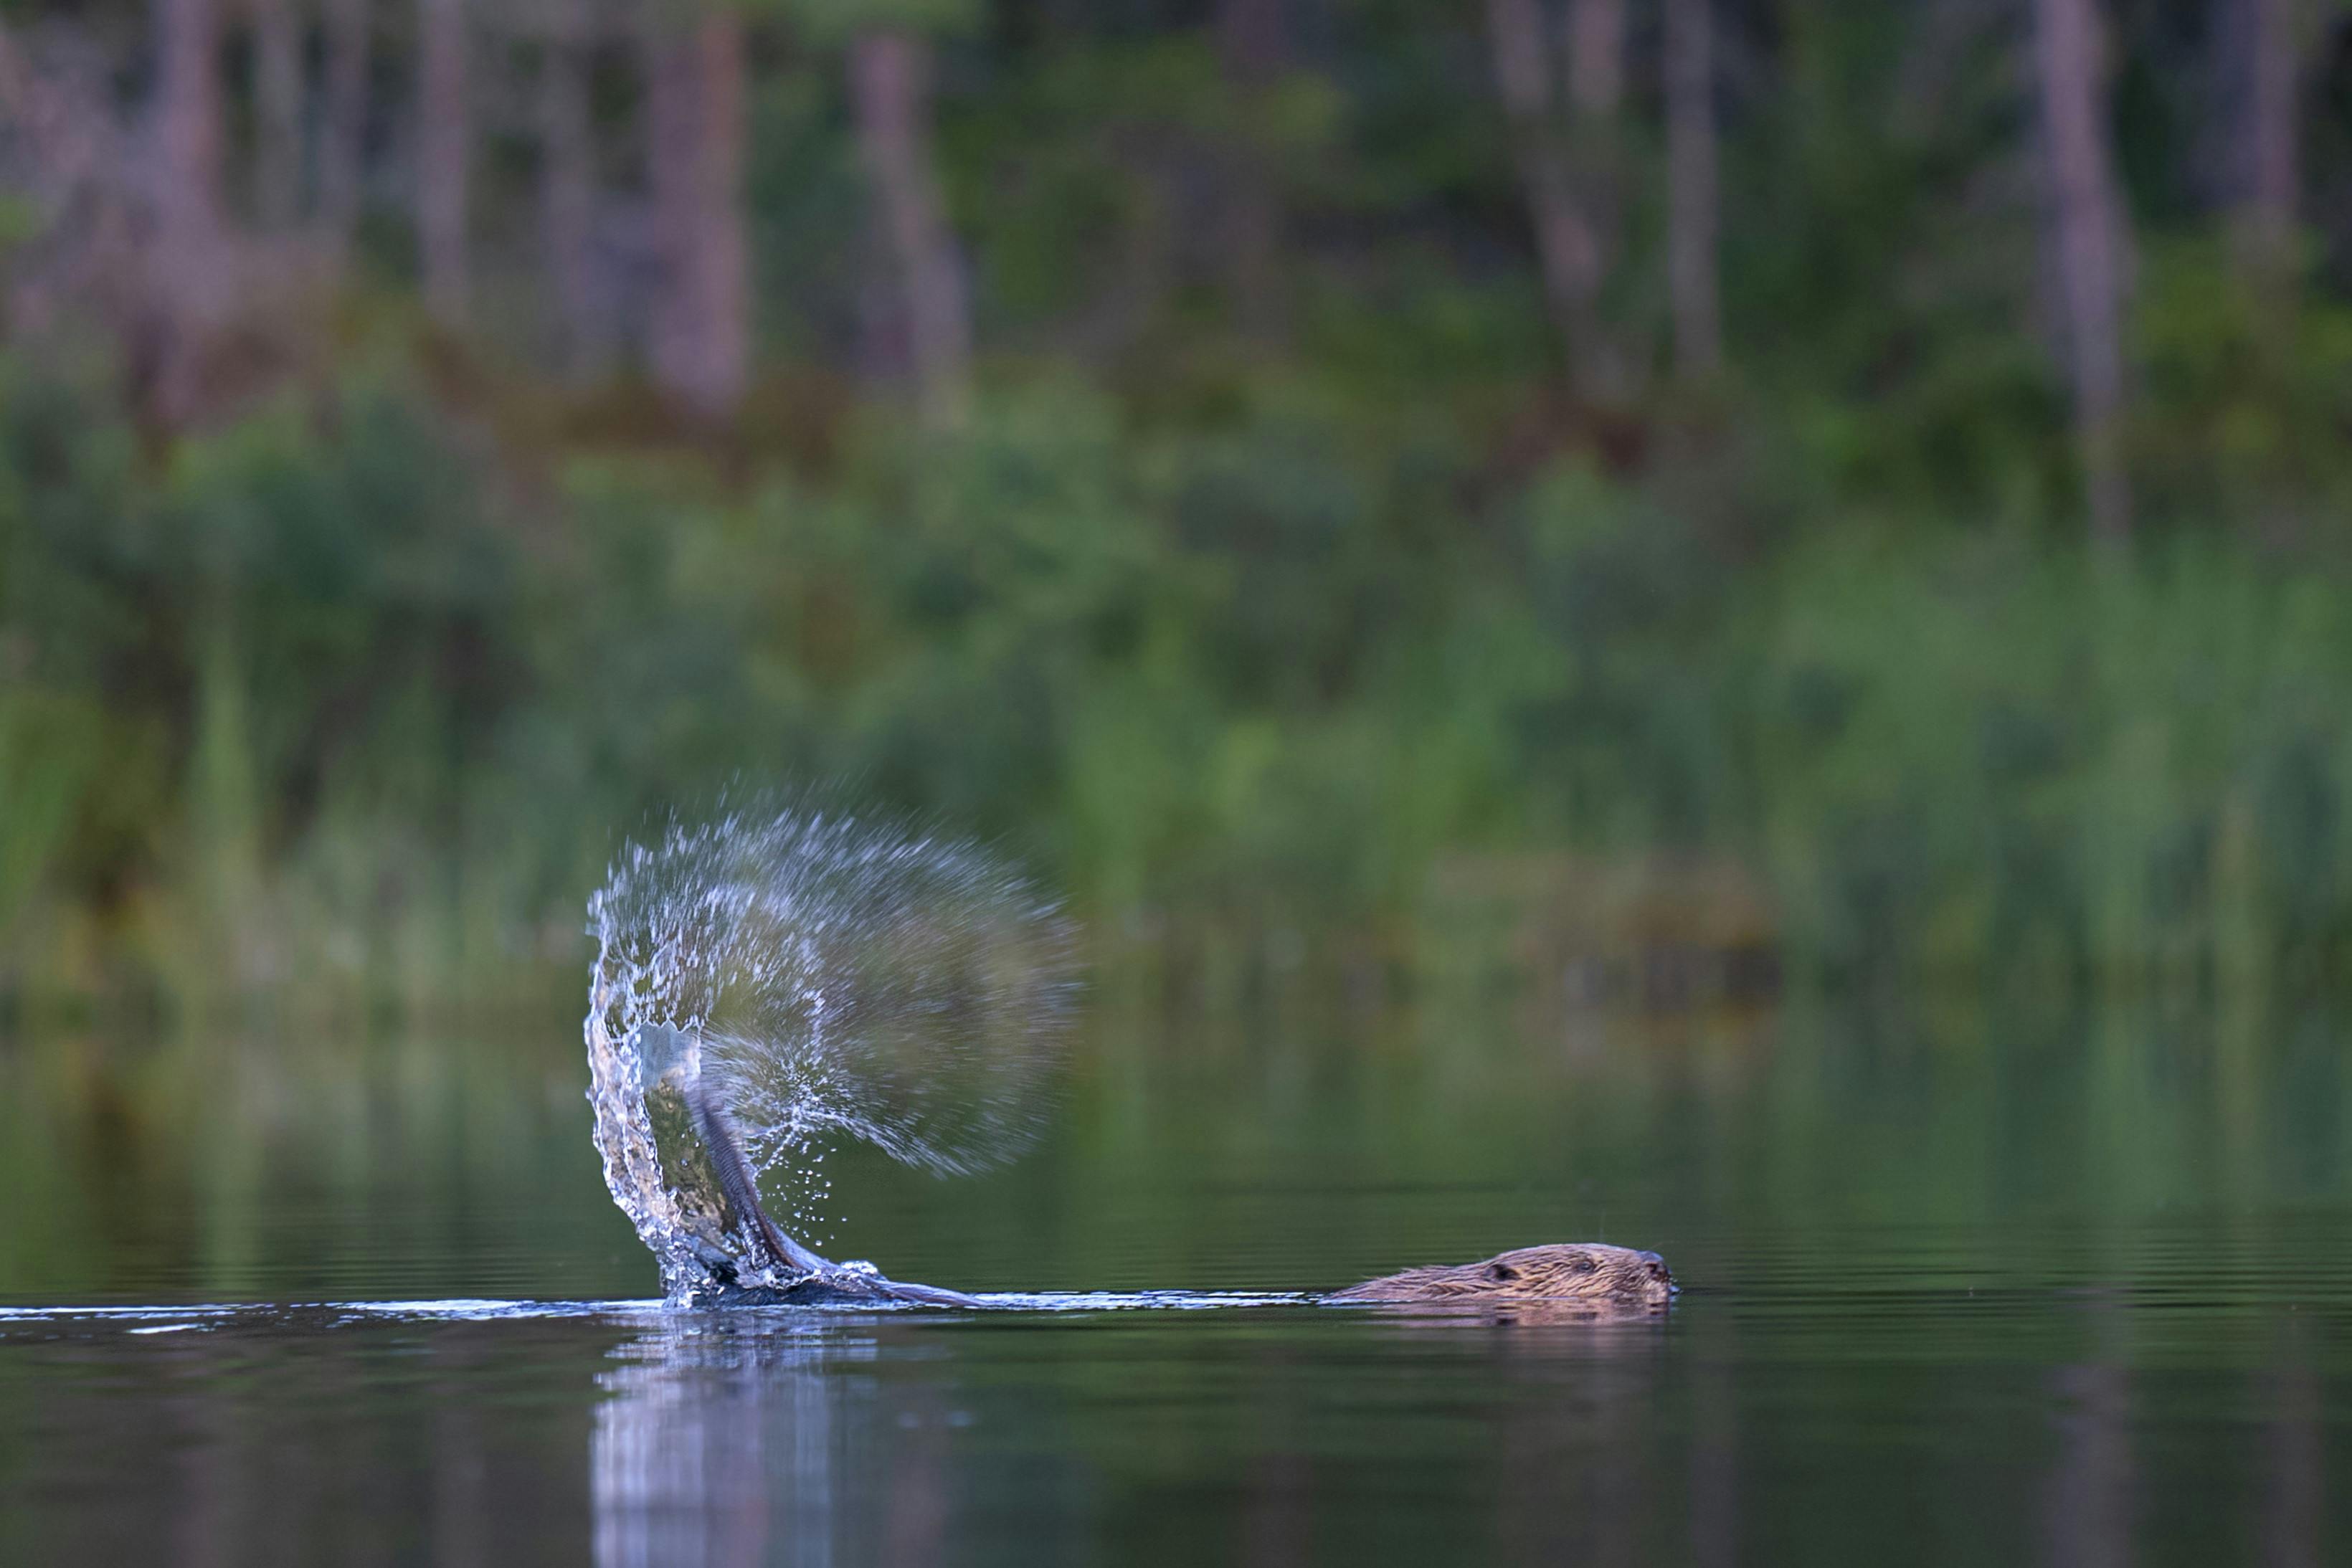 Castor golpeando su cola en la superficie del agua enviando gotas al aire, fotografiado durante el safari de castores en Suecia de Nordic Discovery.